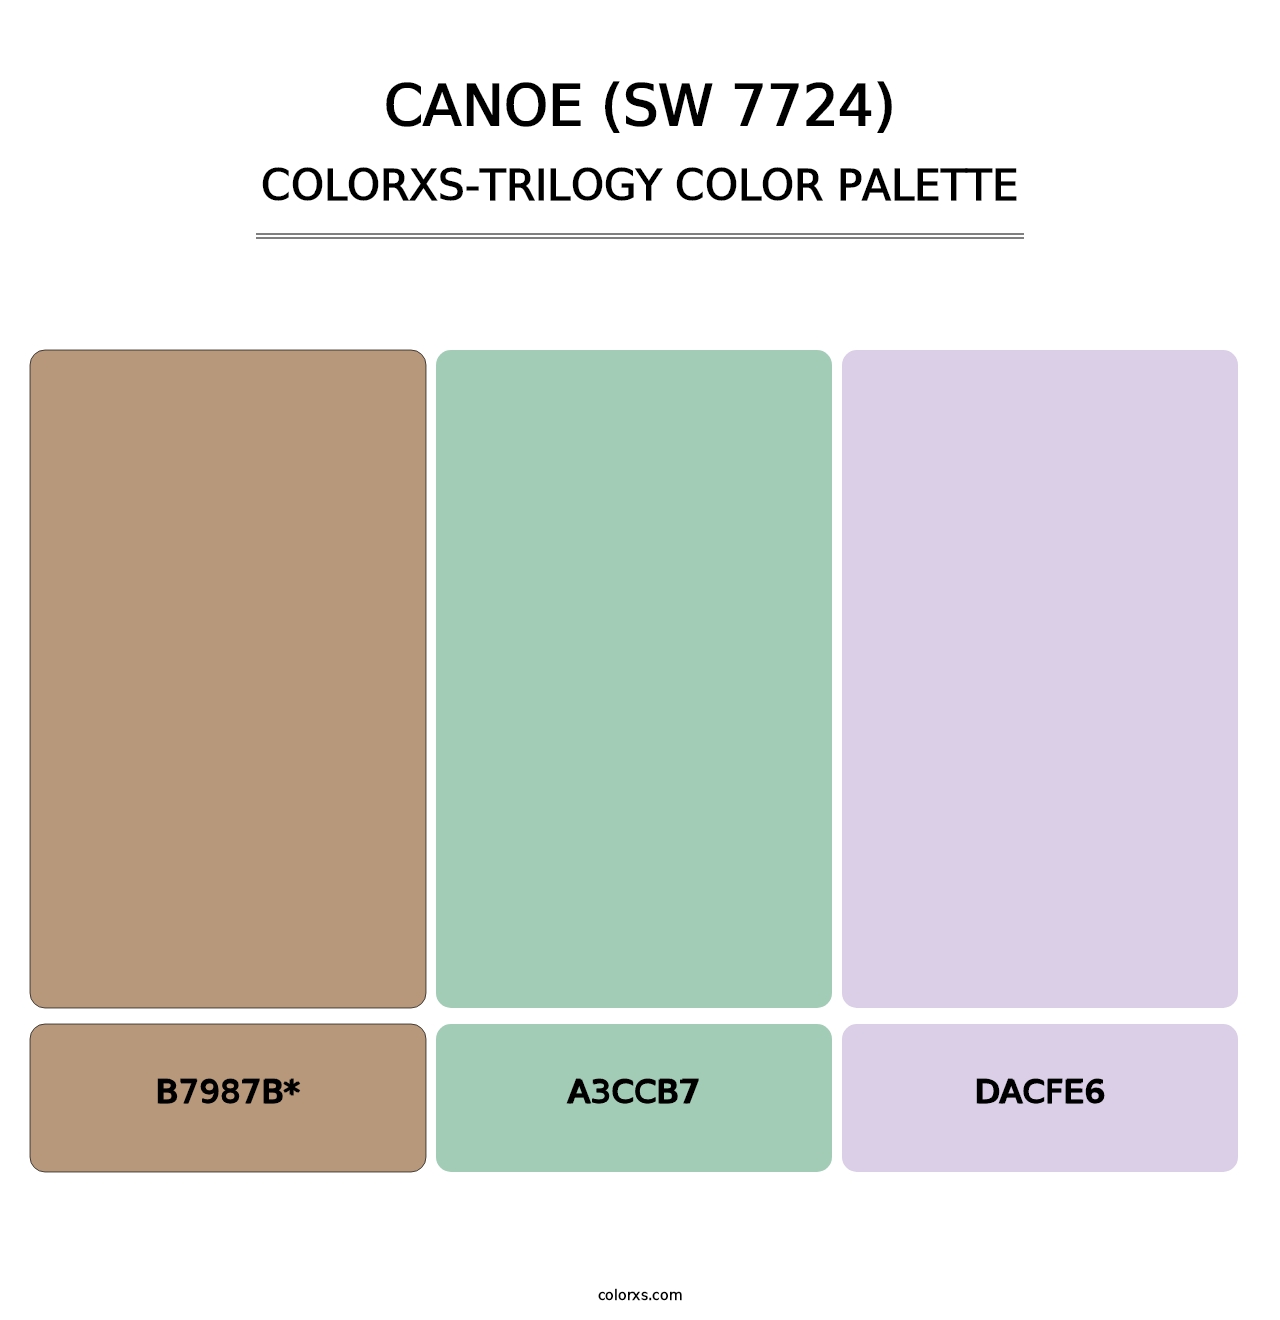 Canoe (SW 7724) - Colorxs Trilogy Palette